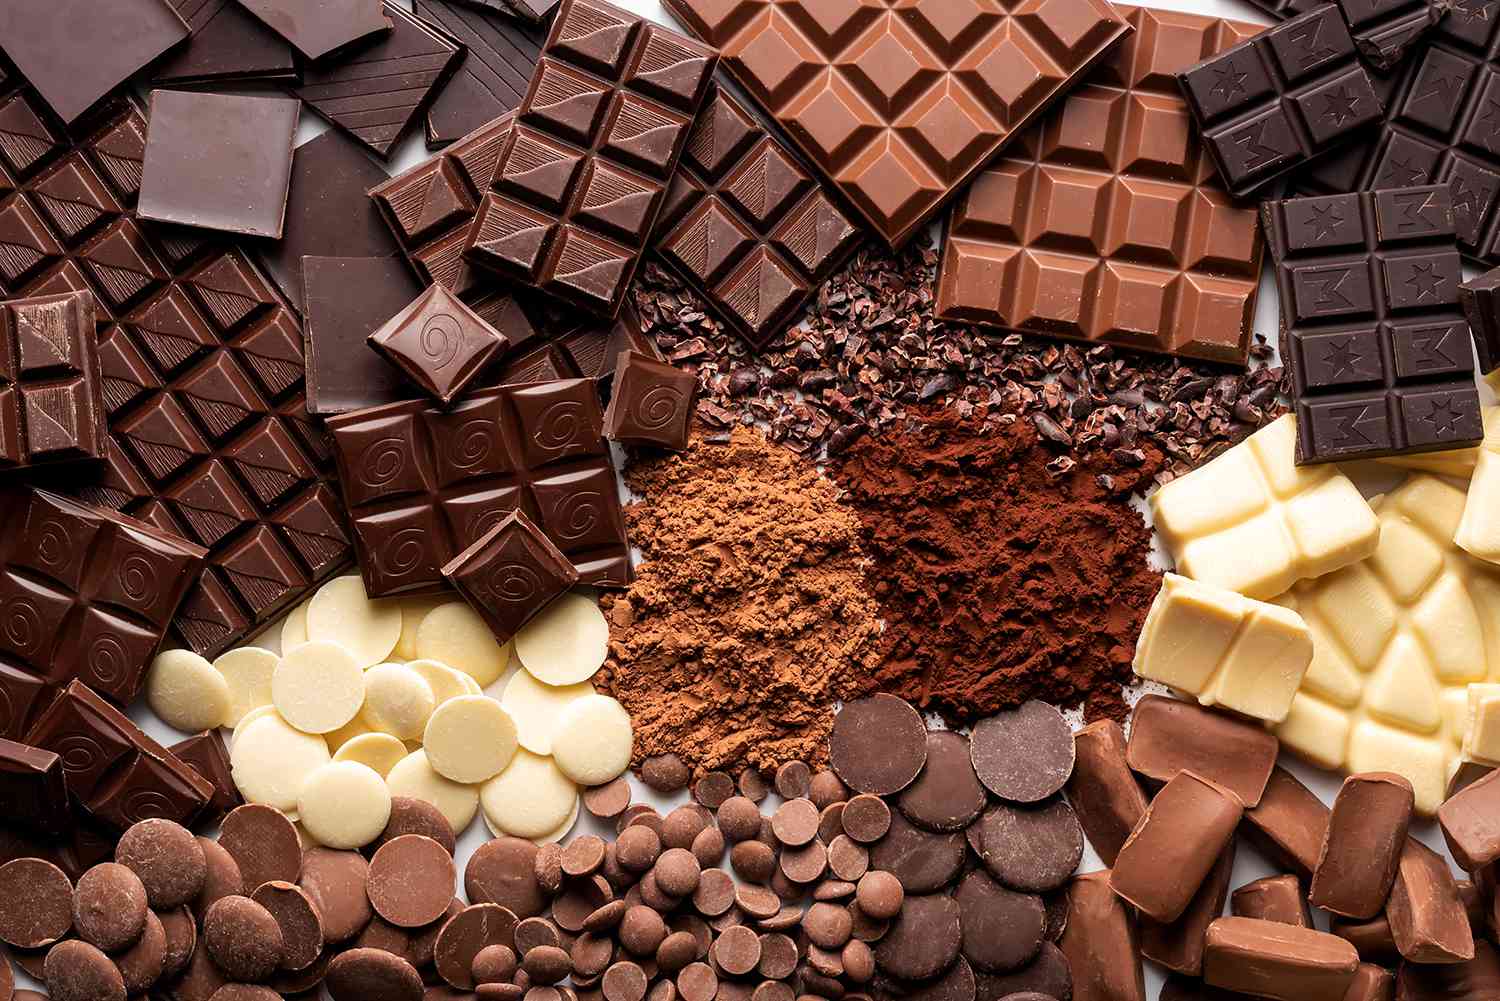 عشاق الشوكولاتة في قلق.. والسبب “أسعار الكاكاو”